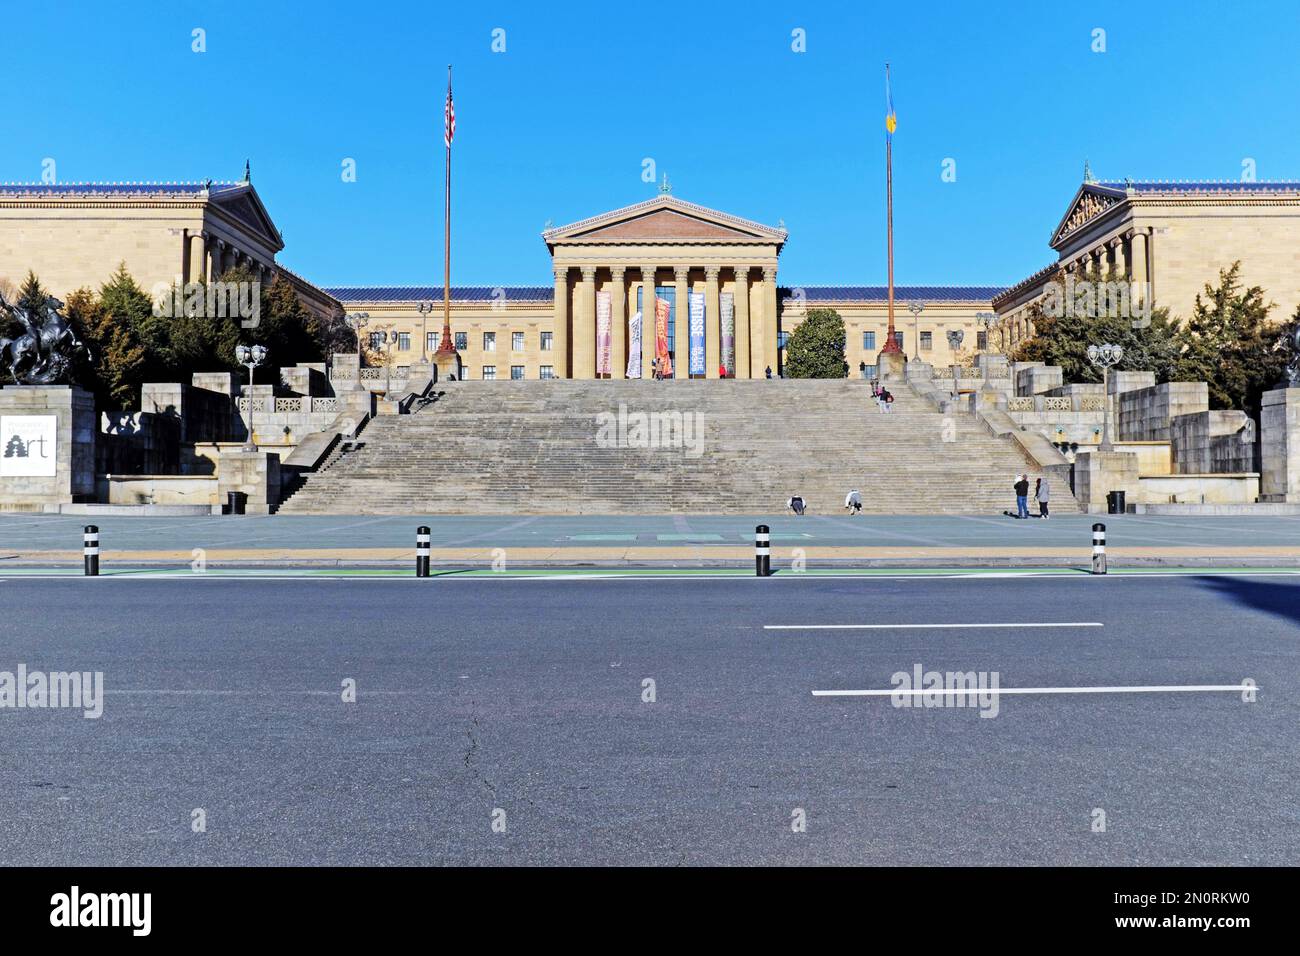 Les célèbres « Rocky » Steps offrent une entrée grandiose dans le parc du musée d'art de Philadelphie, en Pennsylvanie. Banque D'Images